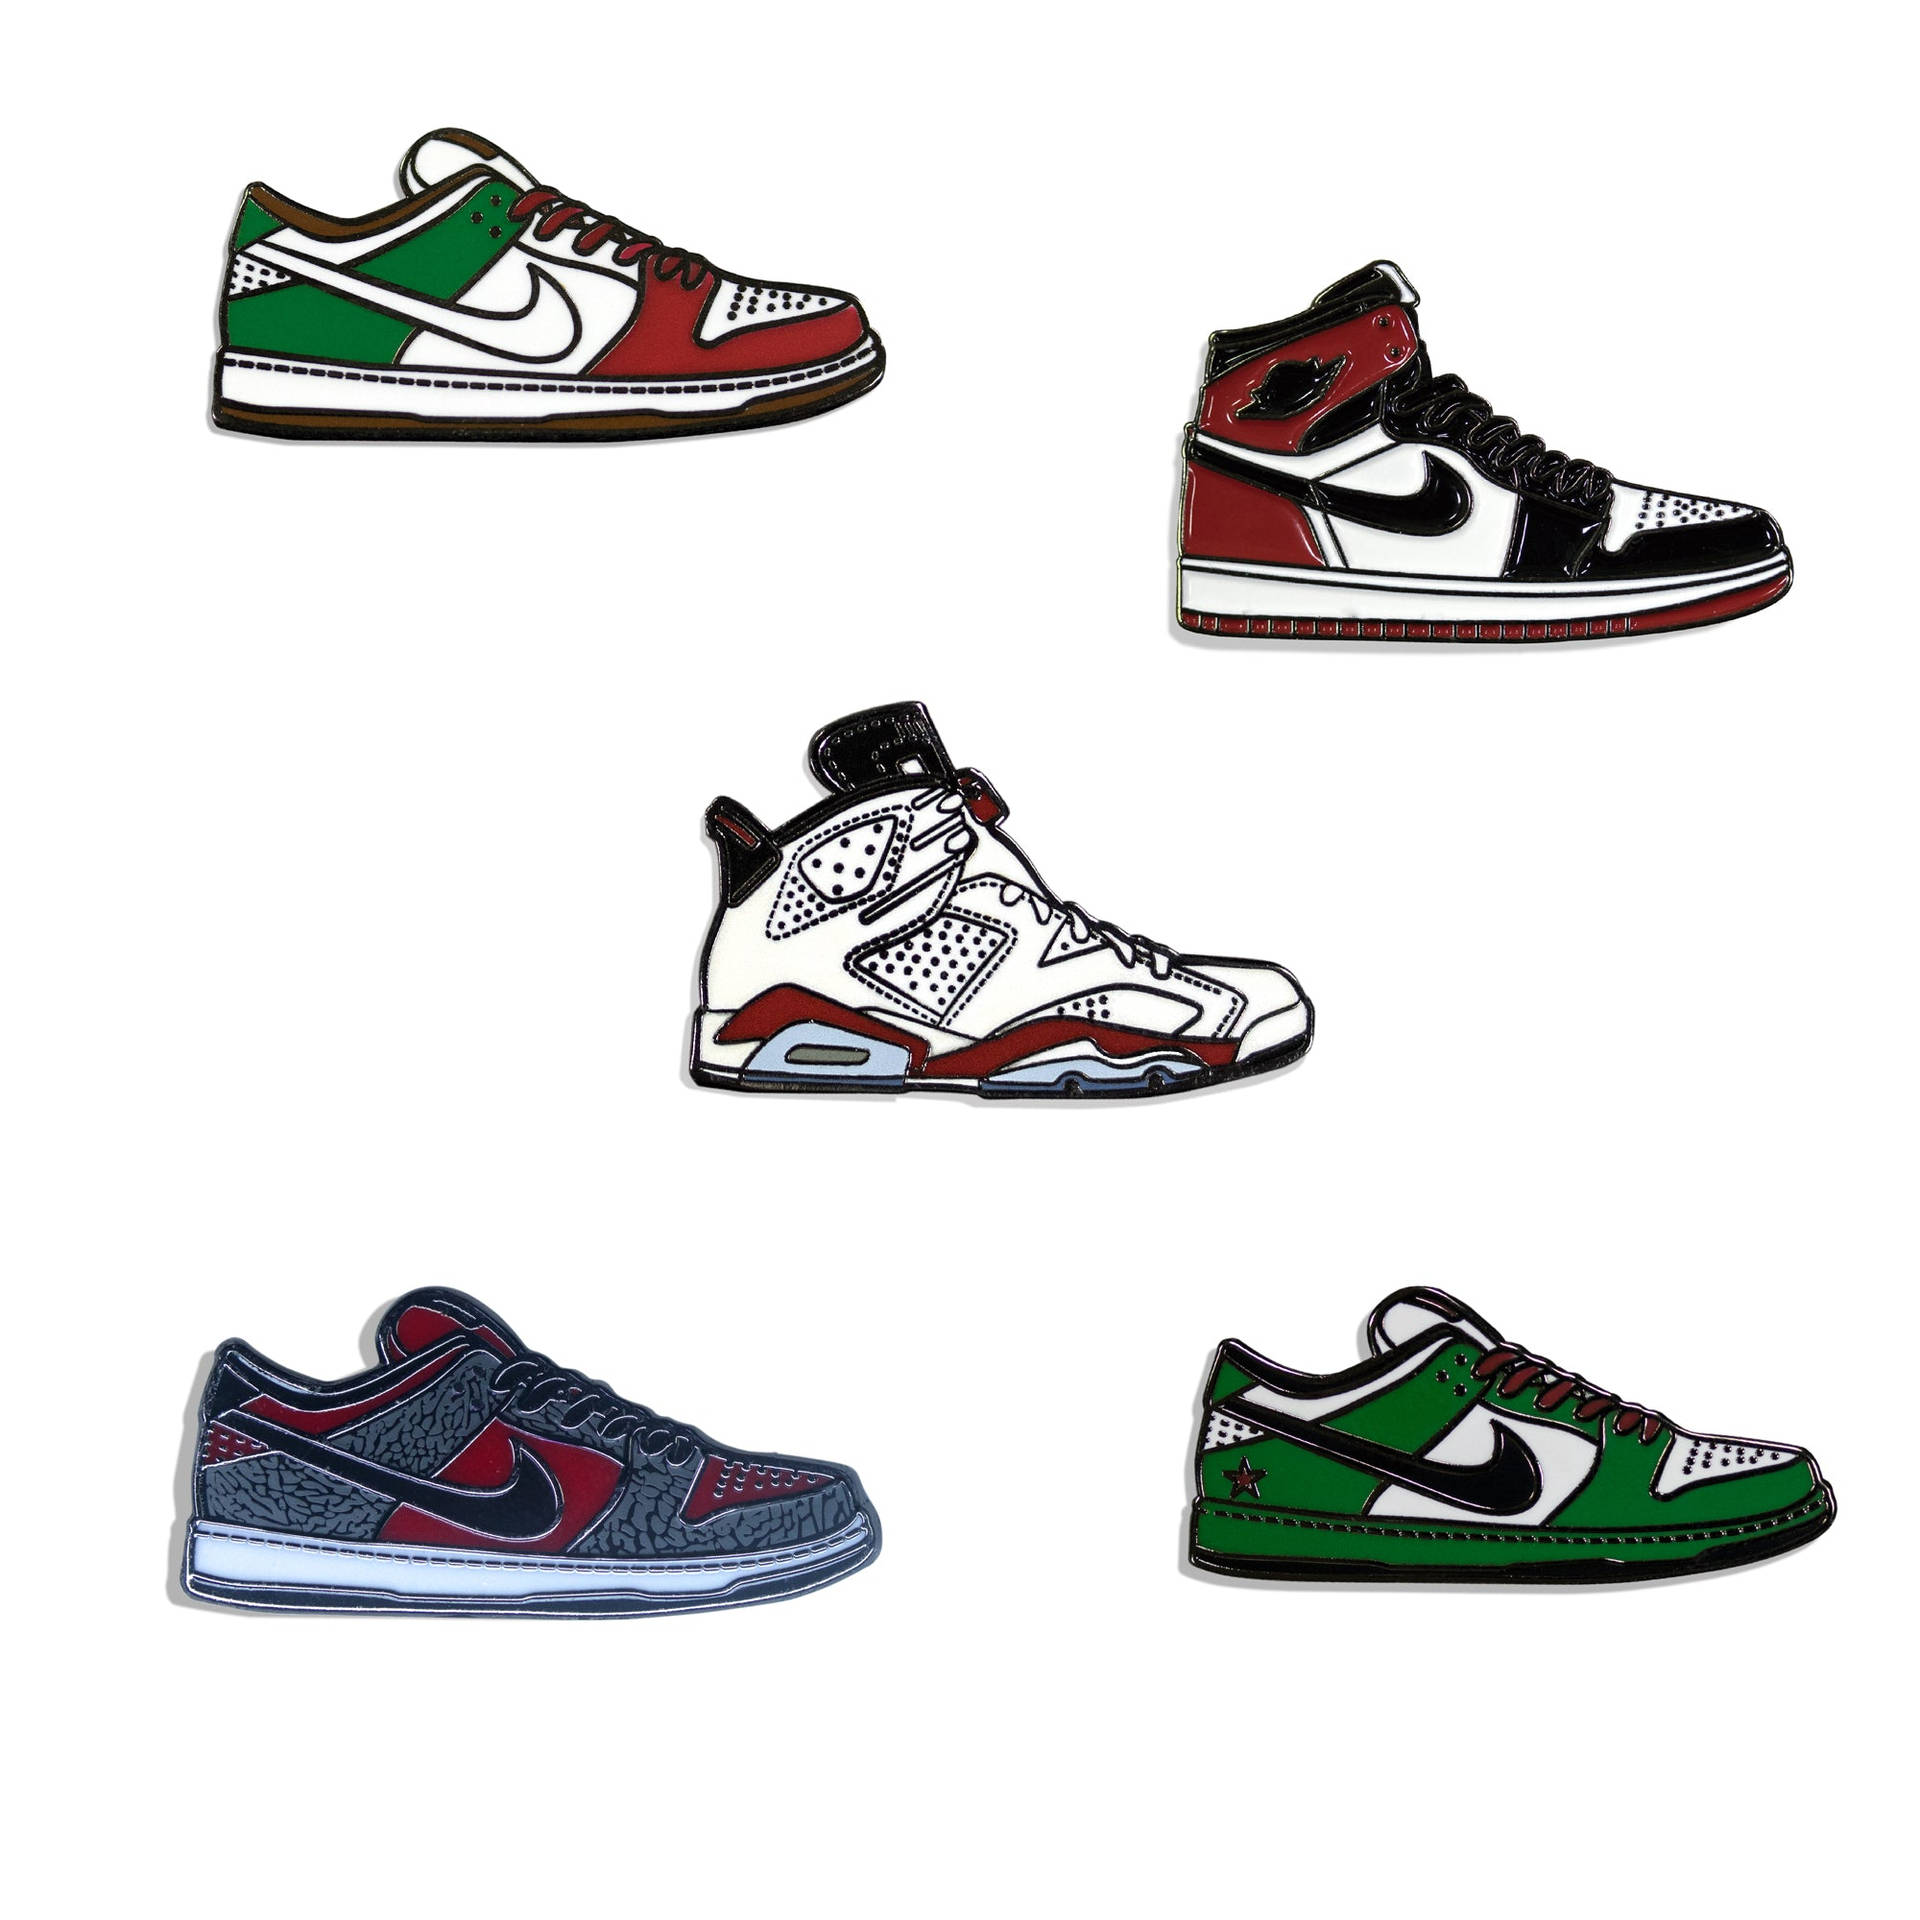 Variasilustraciones De Zapatillas De Nike En Estilo De Dibujos Animados Fondo de pantalla